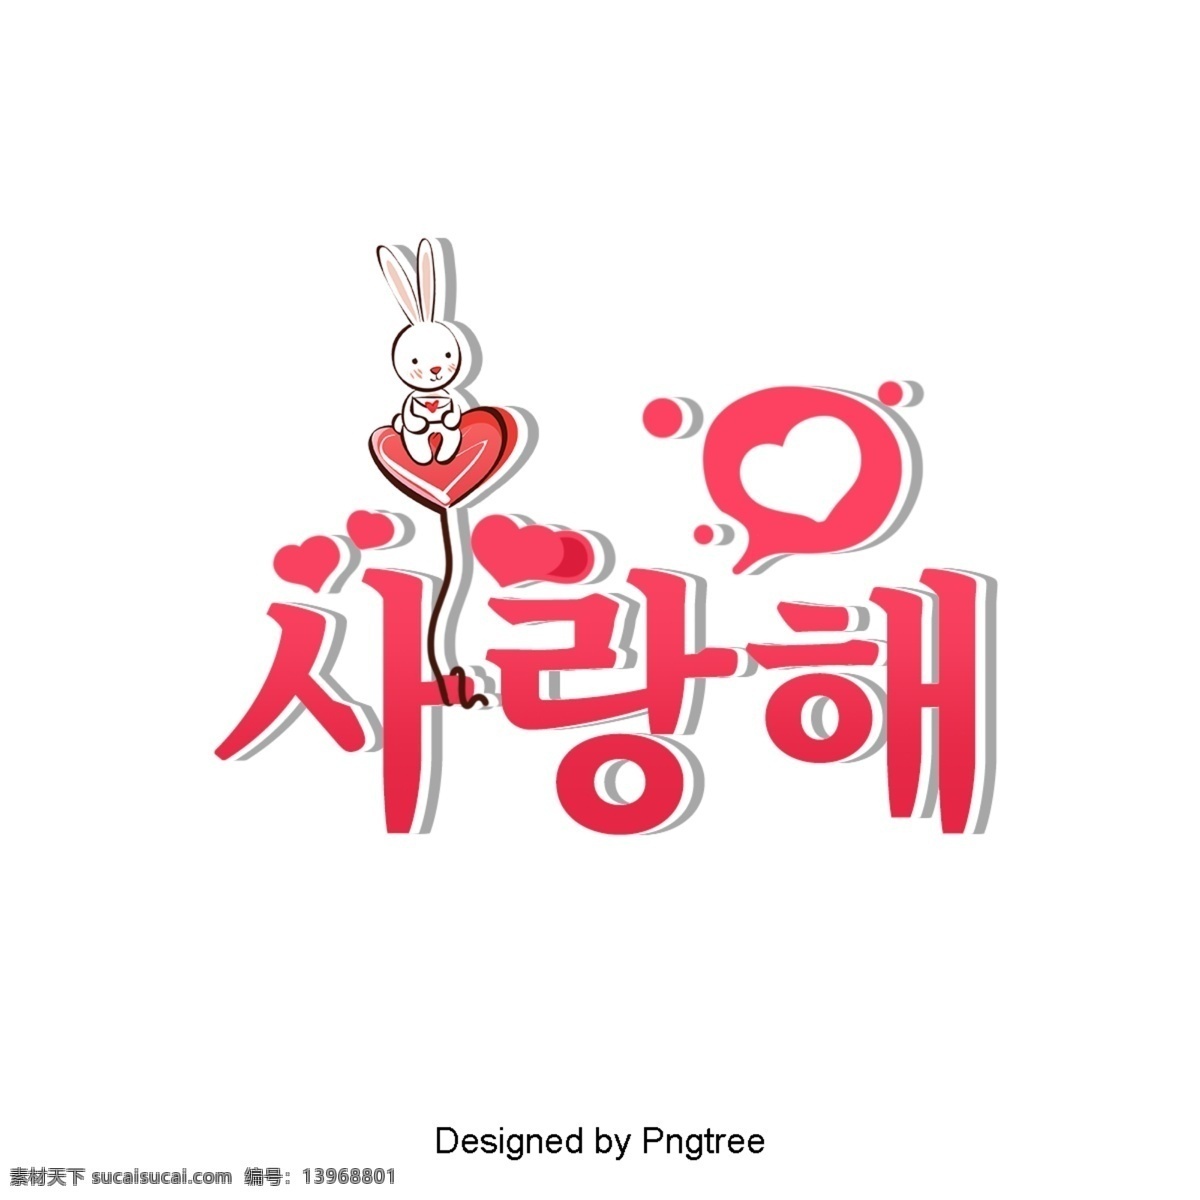 我爱 韩国 卡通 字体 场景 茭白装置红色 我爱你 兔子 心形状